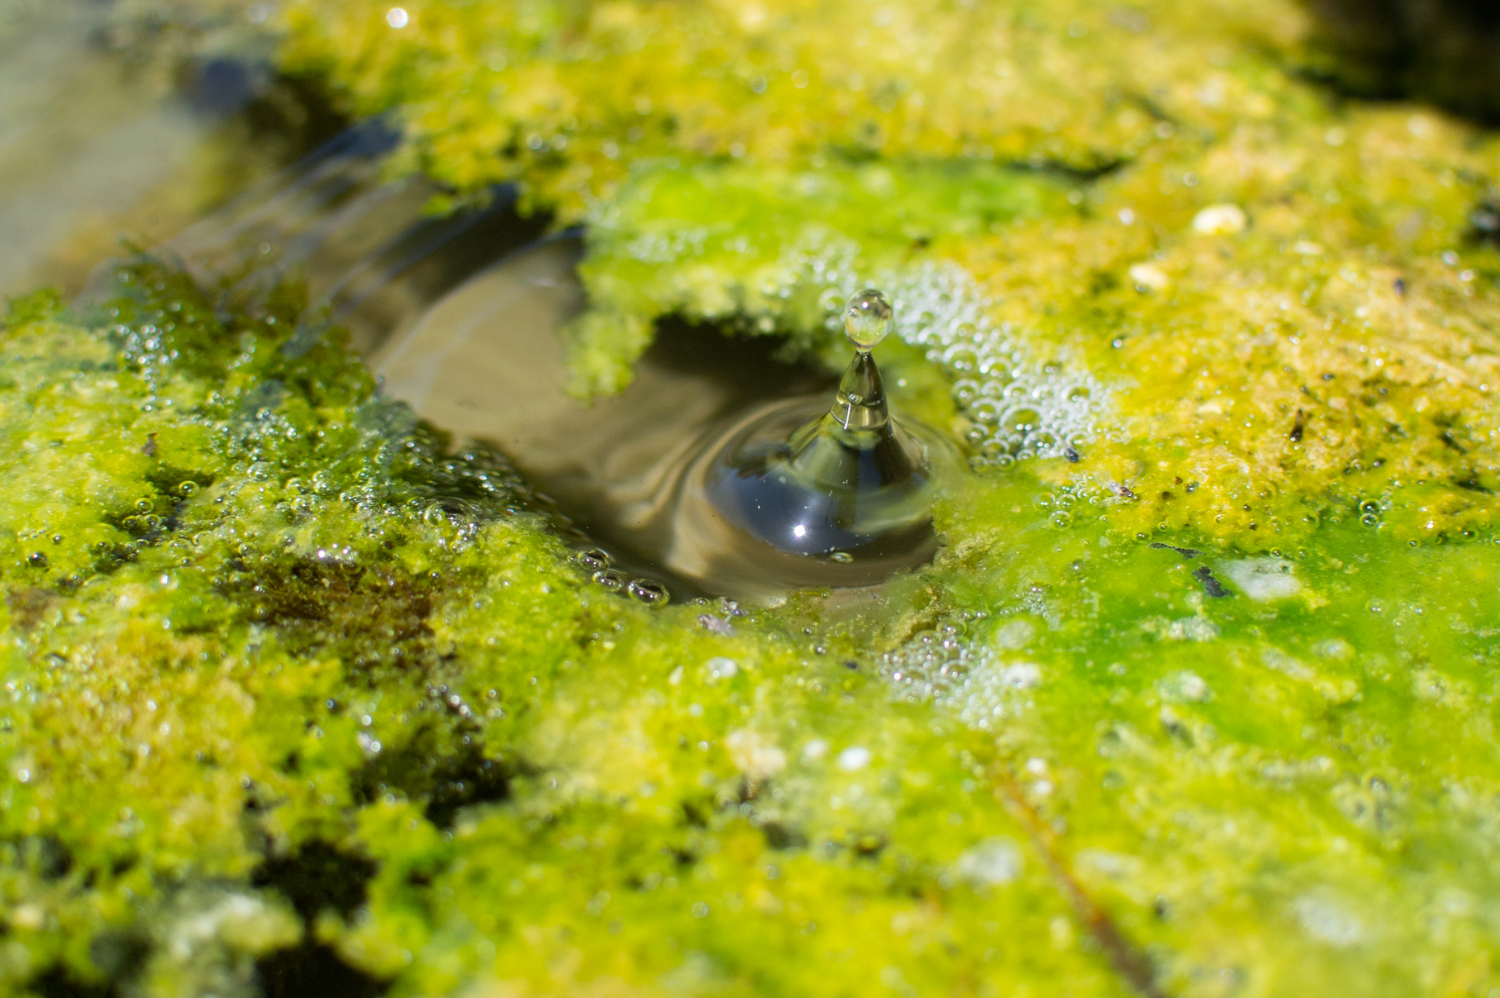 Comment supprimer les algues de mon étang ? I Etang-solution